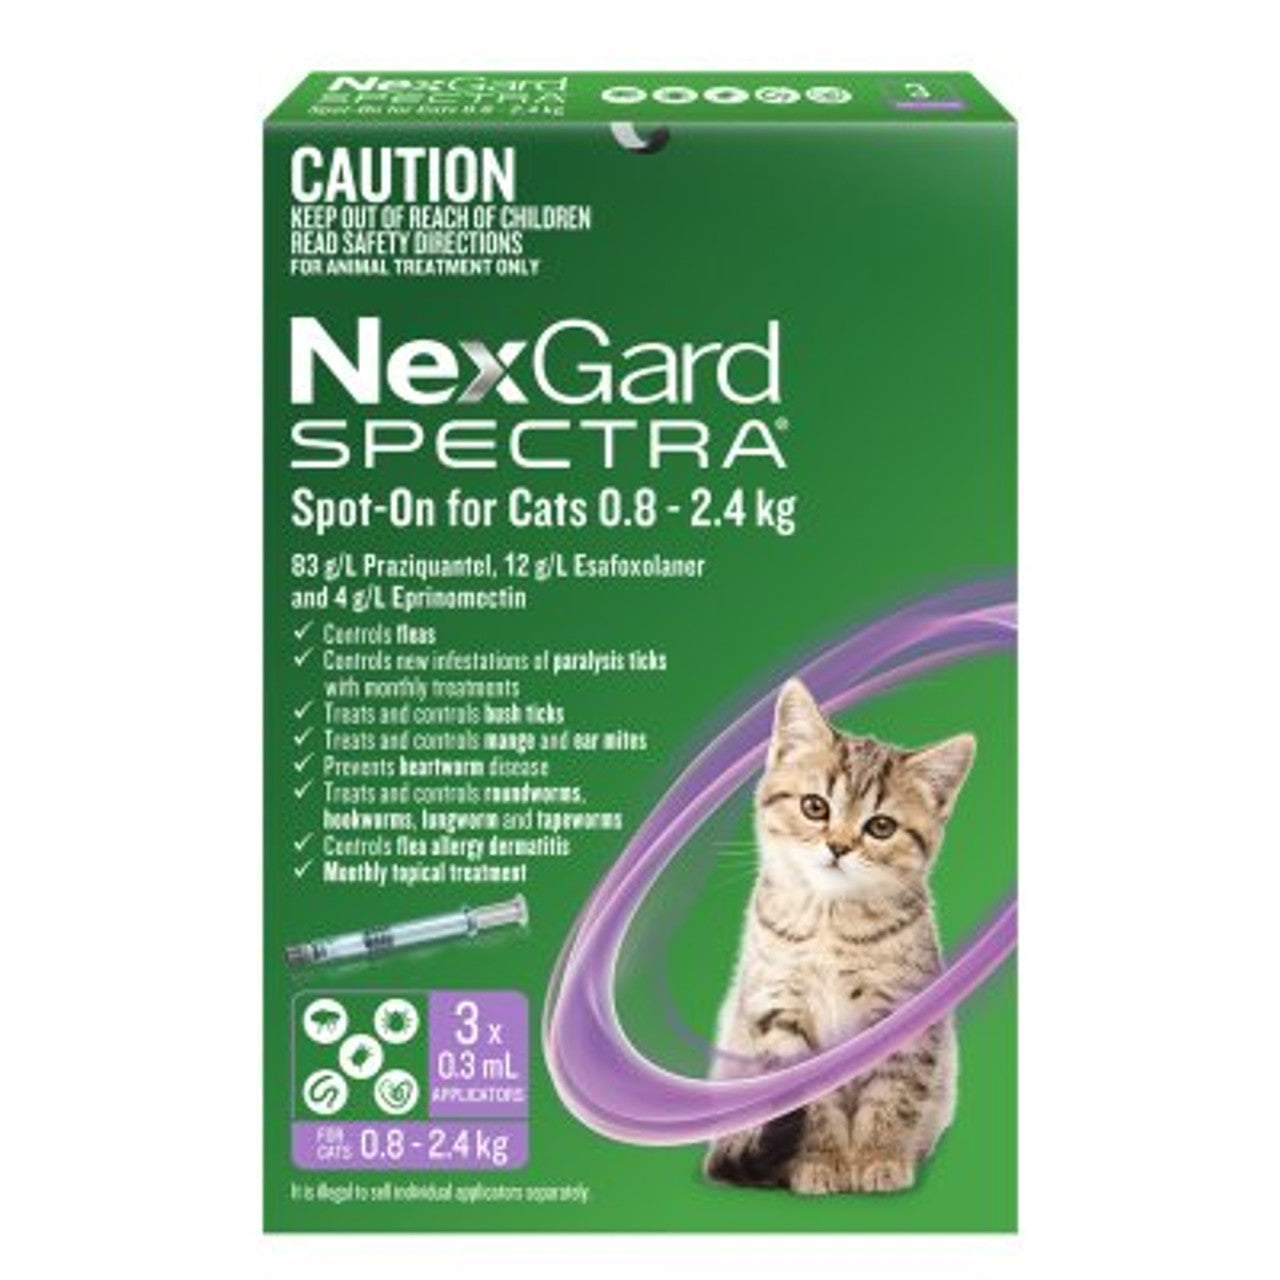 Nexgard Spectra Spot-On For Cats 0.8-2.4kgs 3's